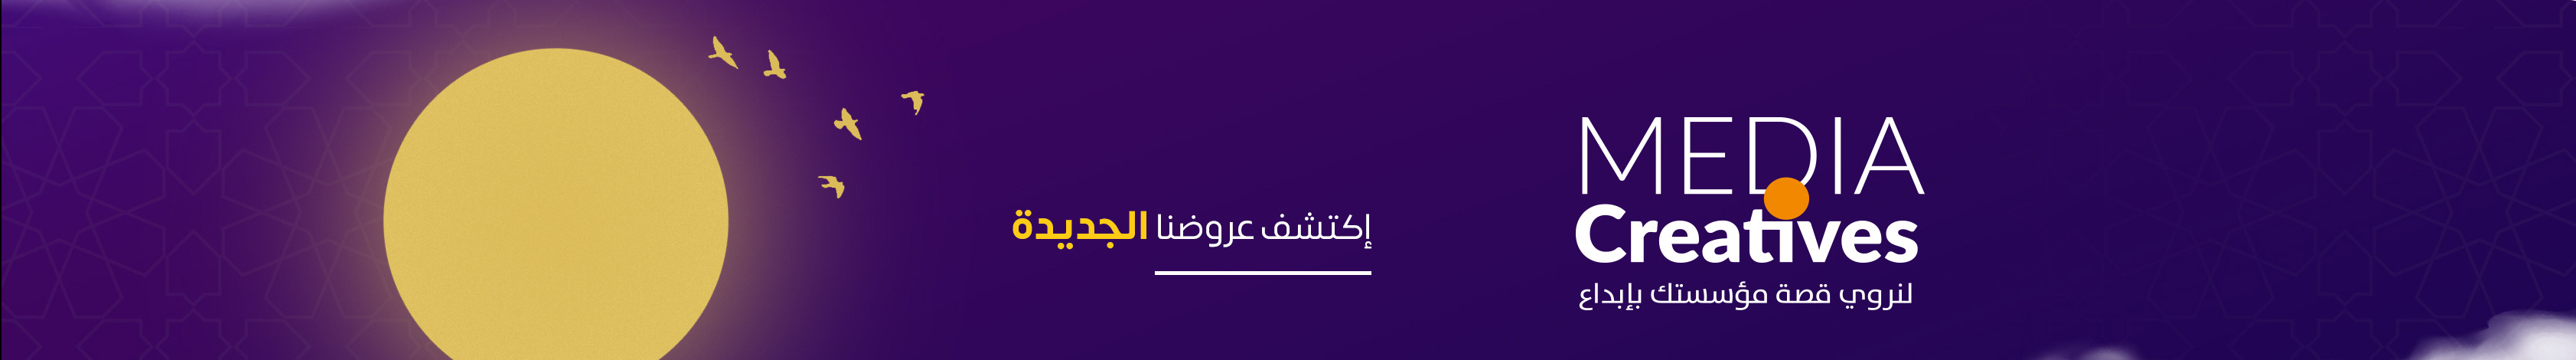 Profil-Banner von khaled djaber